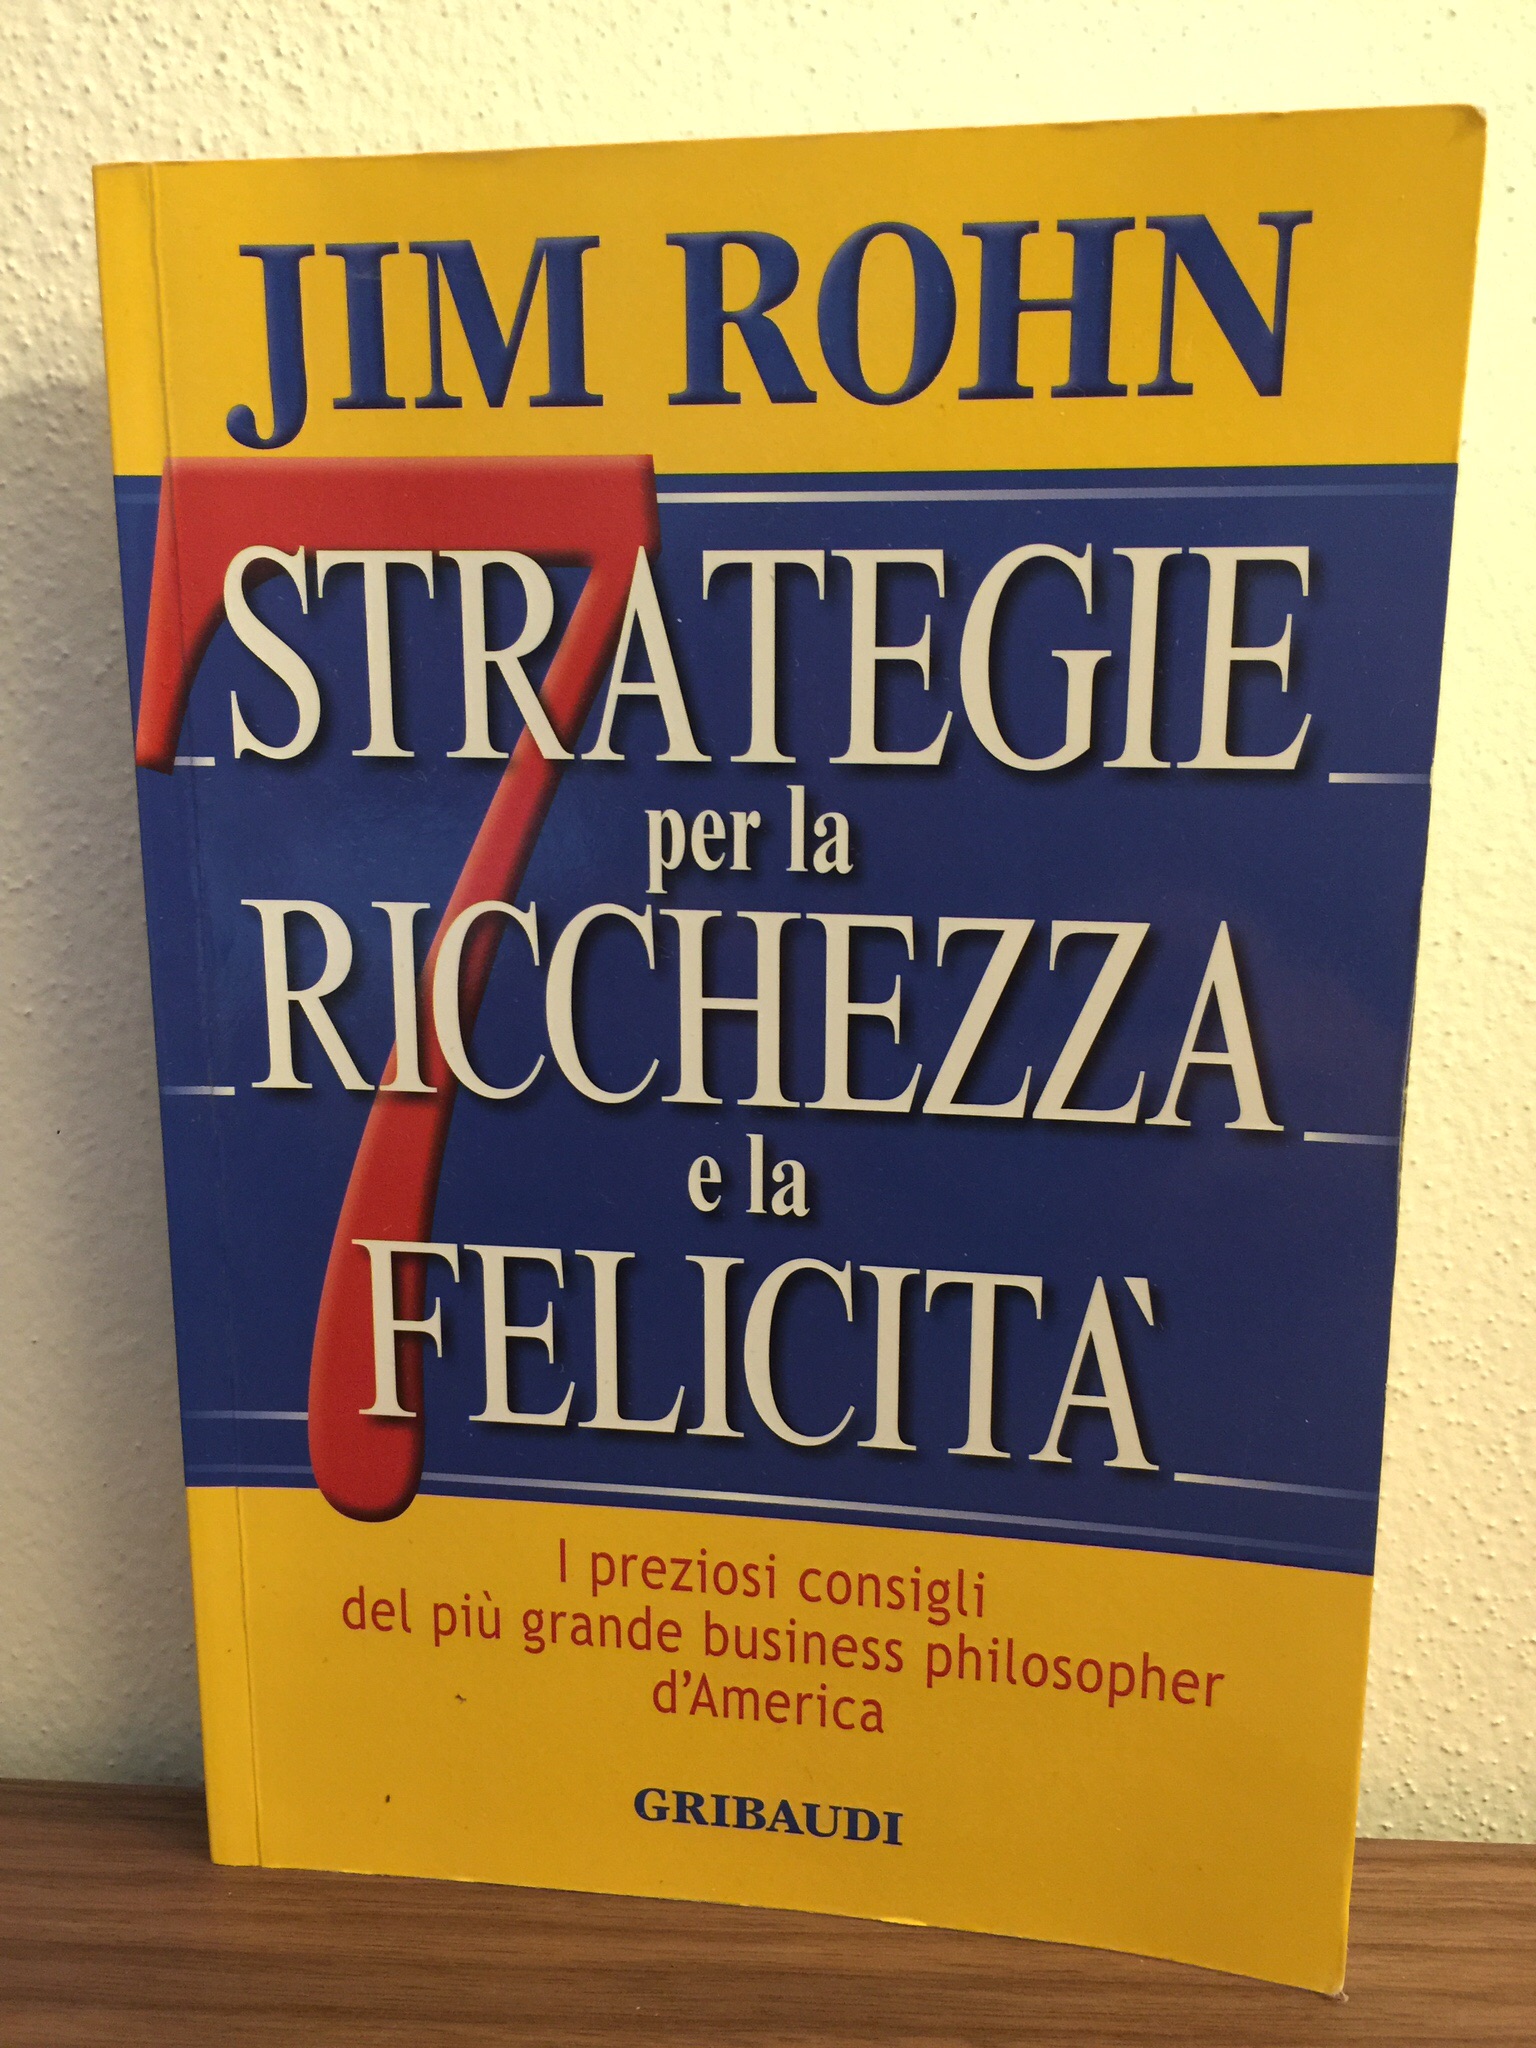 7 Strategie per la ricchezza e la felicità – Jim Rohn